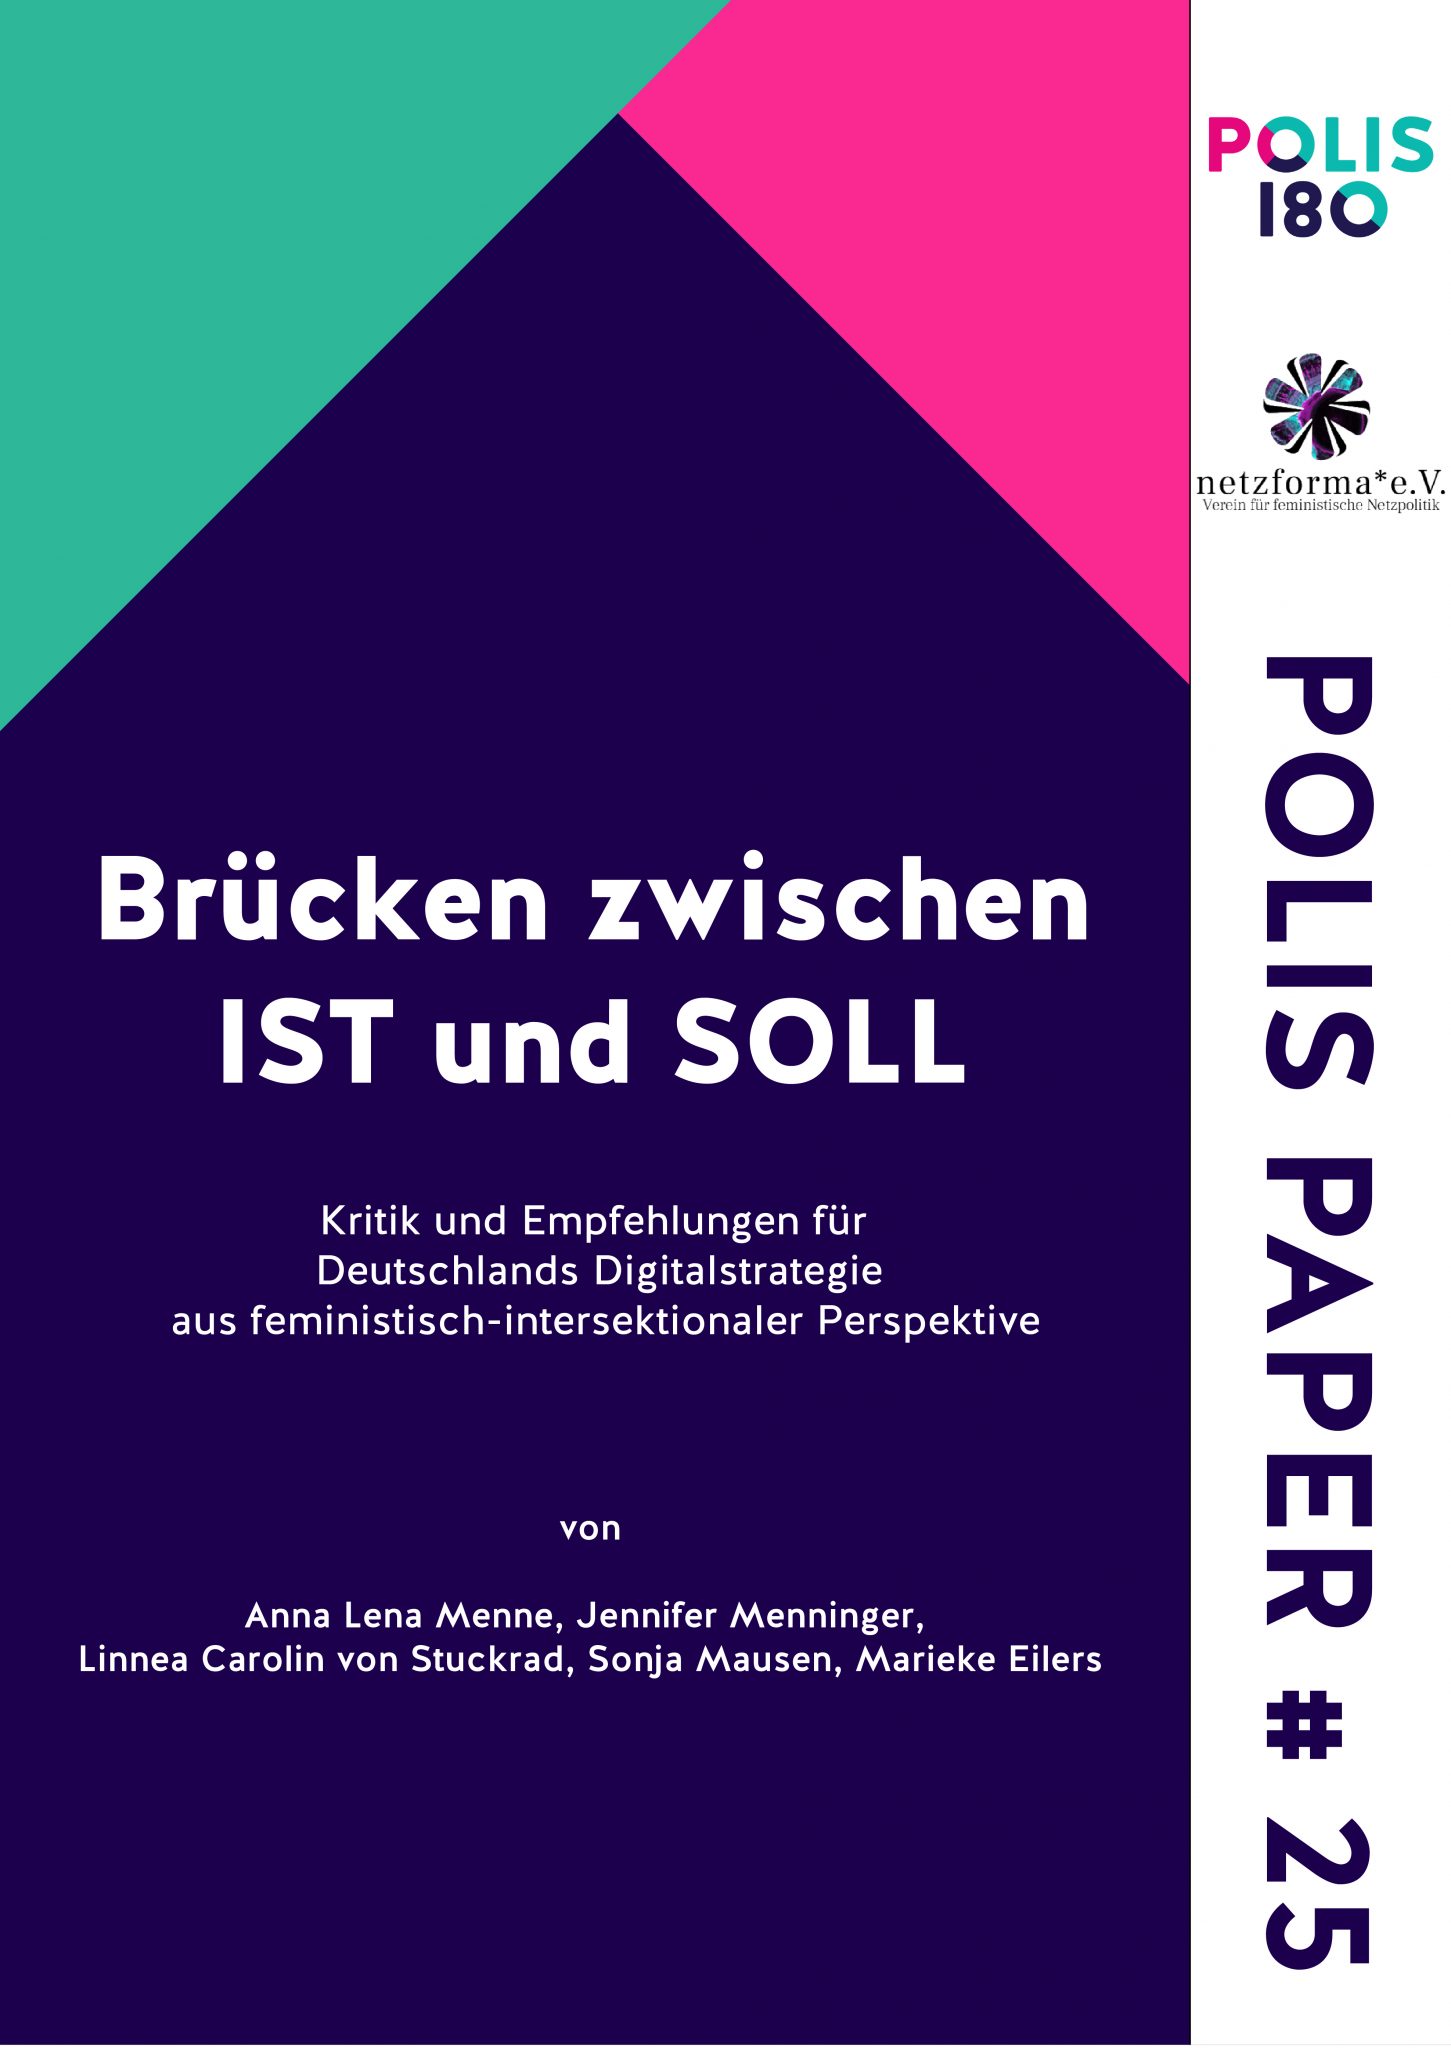 Polis Paper N° 25 - Brücken zwischen IST und SOLL - Kritik und Empfehlungen für Deutschlands Digitalstrategie aus feministisch-intersektionaler Perspektive